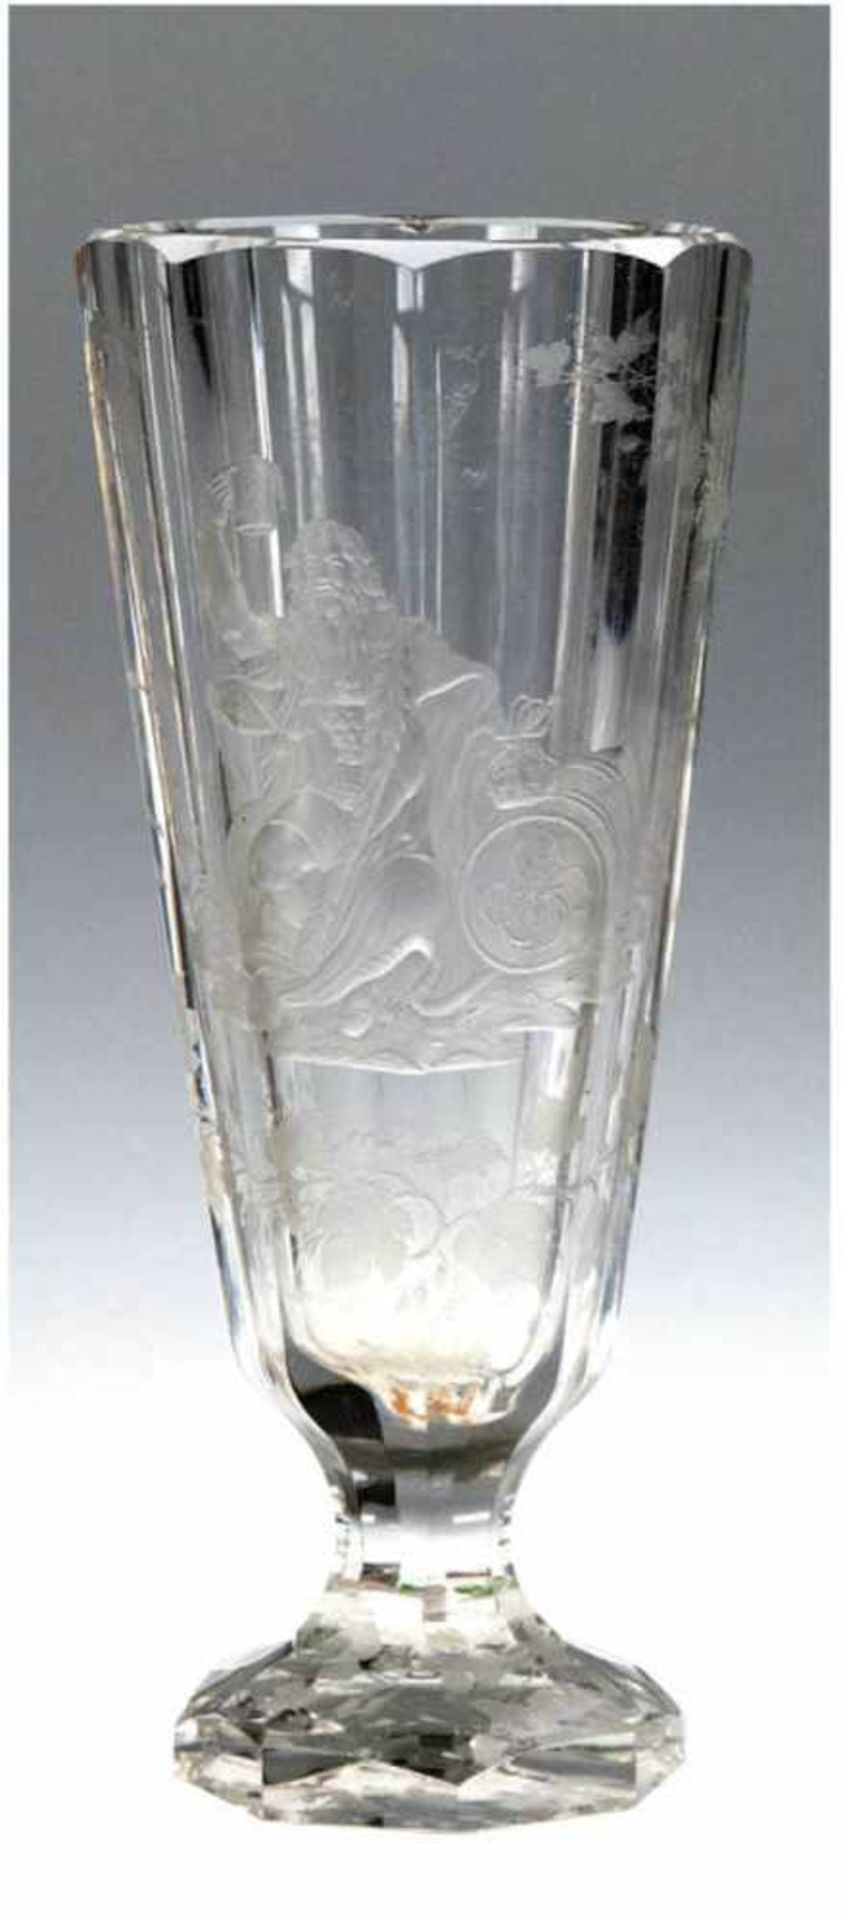 Bierpokal, Böhmen, wohl Karlsbad, Joh. F. Hoffmann, um 1870-1880, farbloses Glas geschliffen, 8-